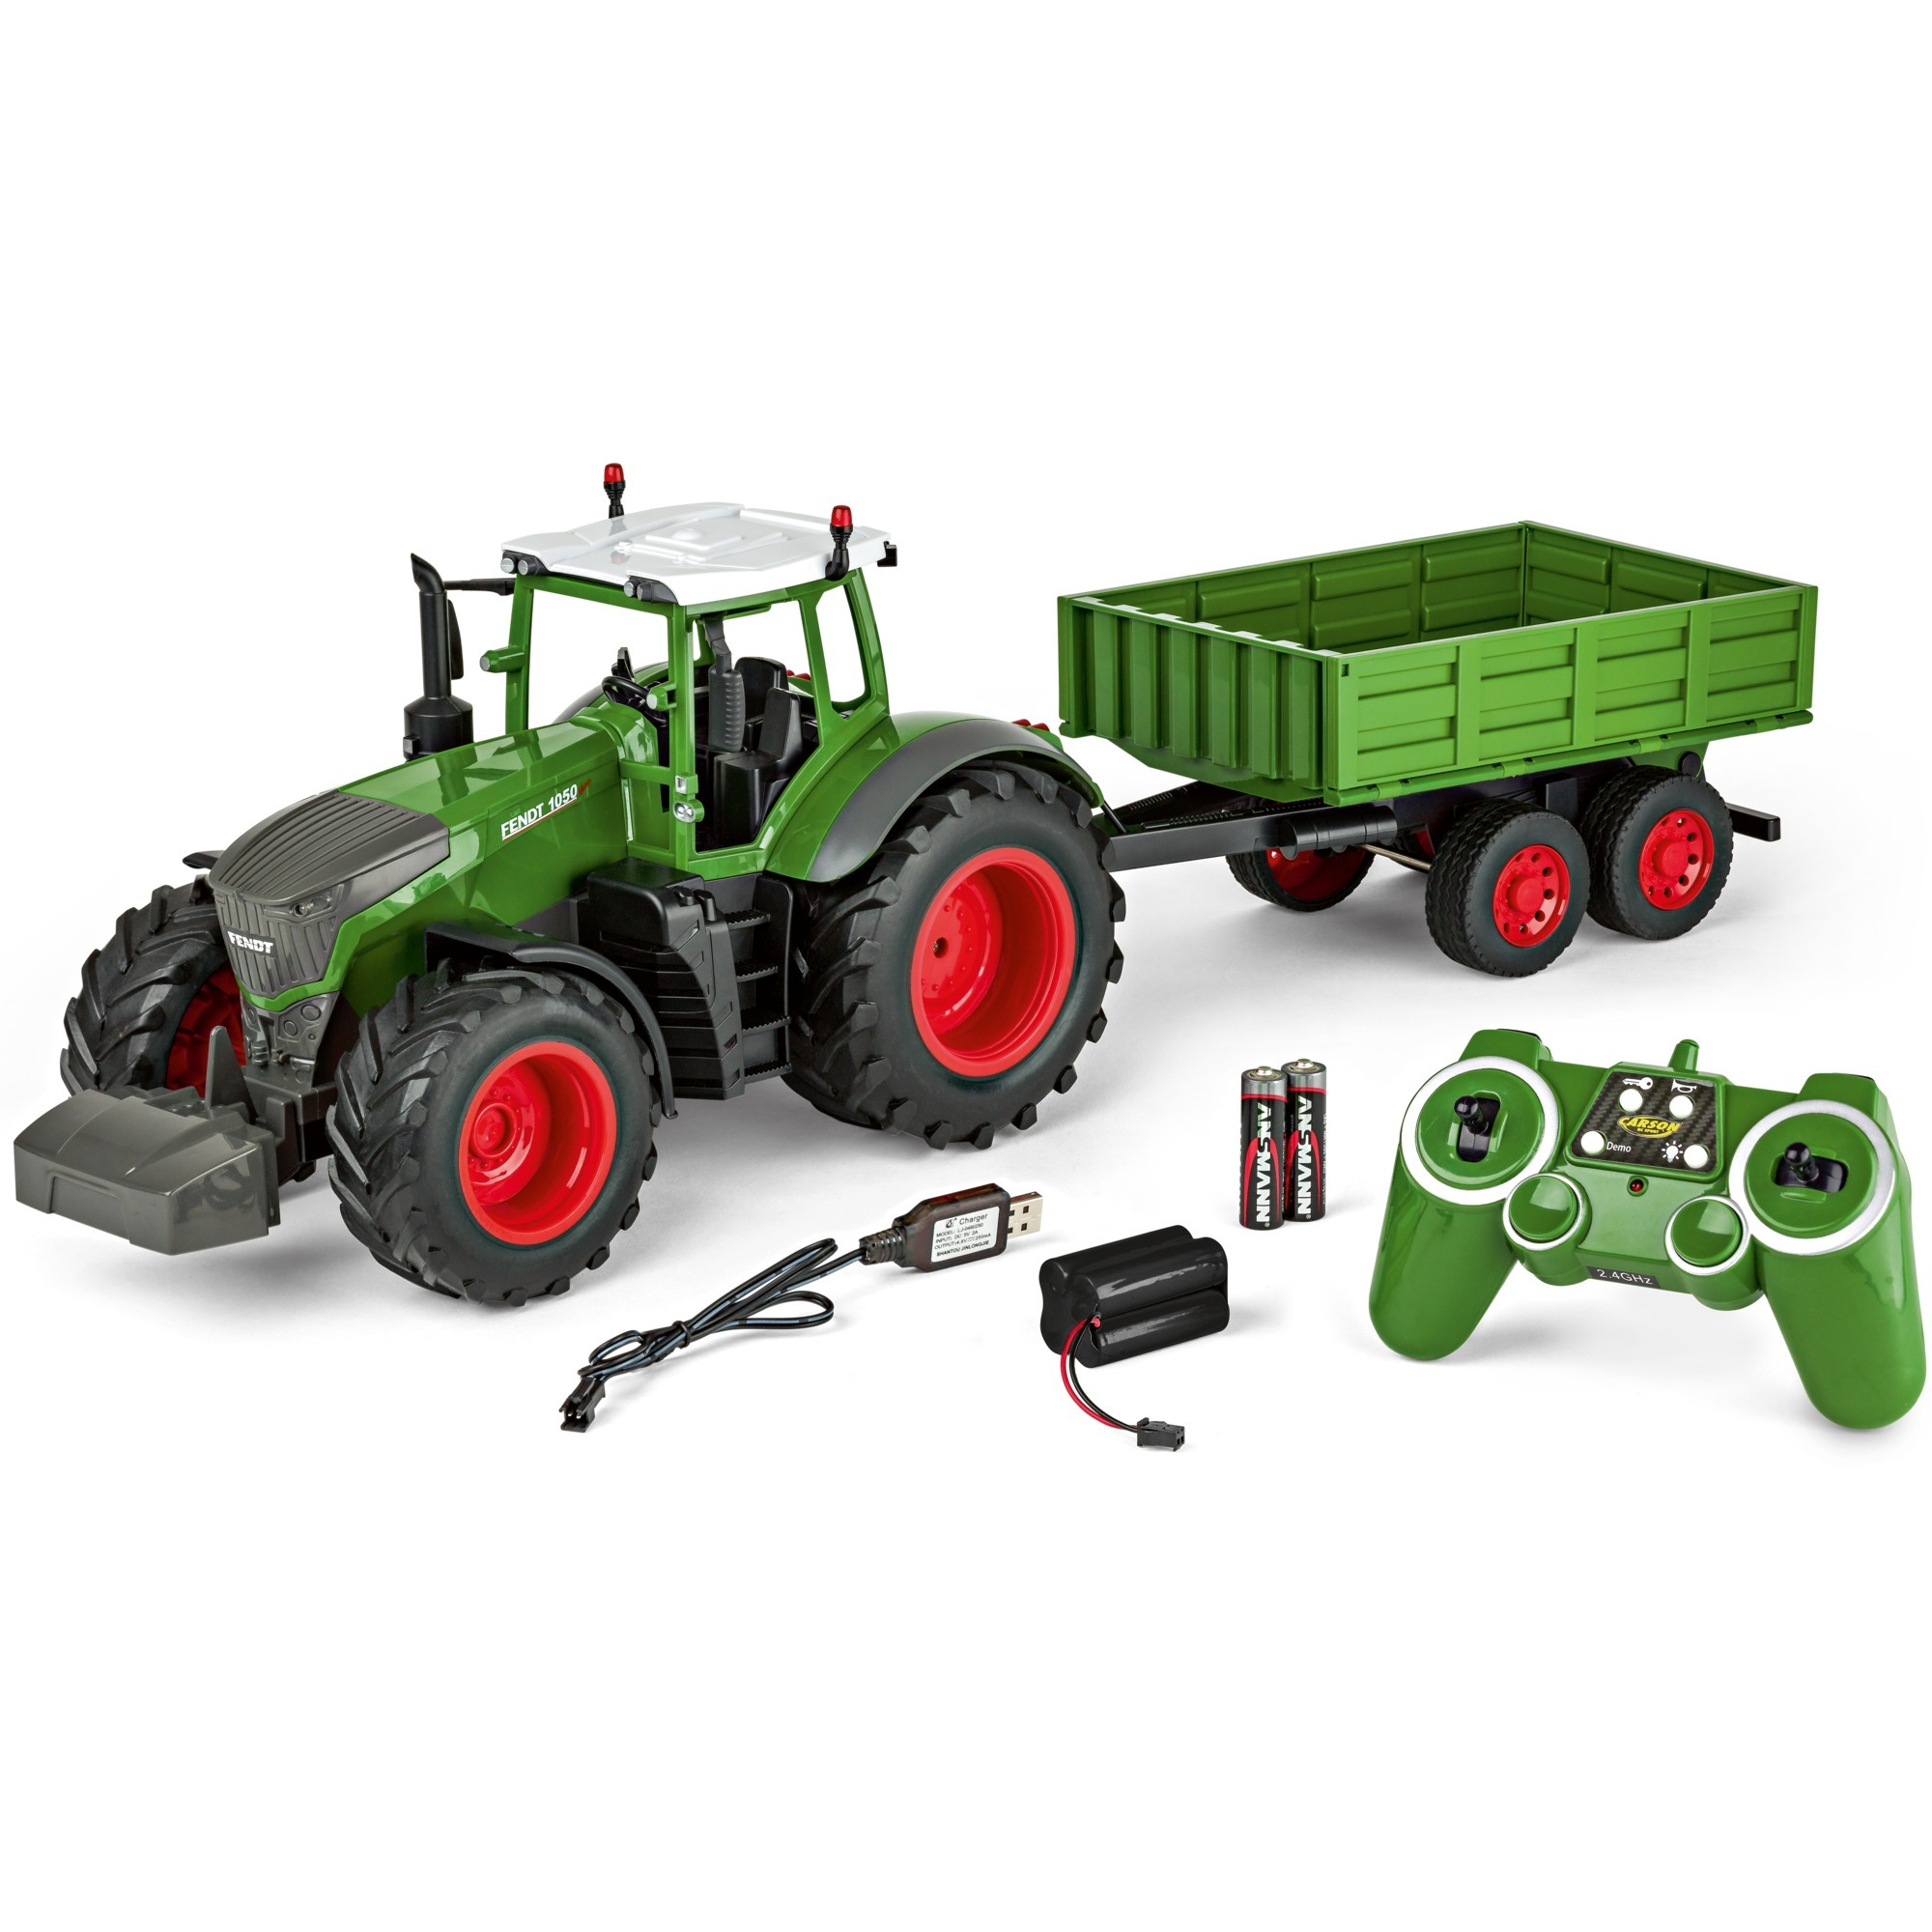 Image of Alternate - RC Traktor mit Anhänger online einkaufen bei Alternate